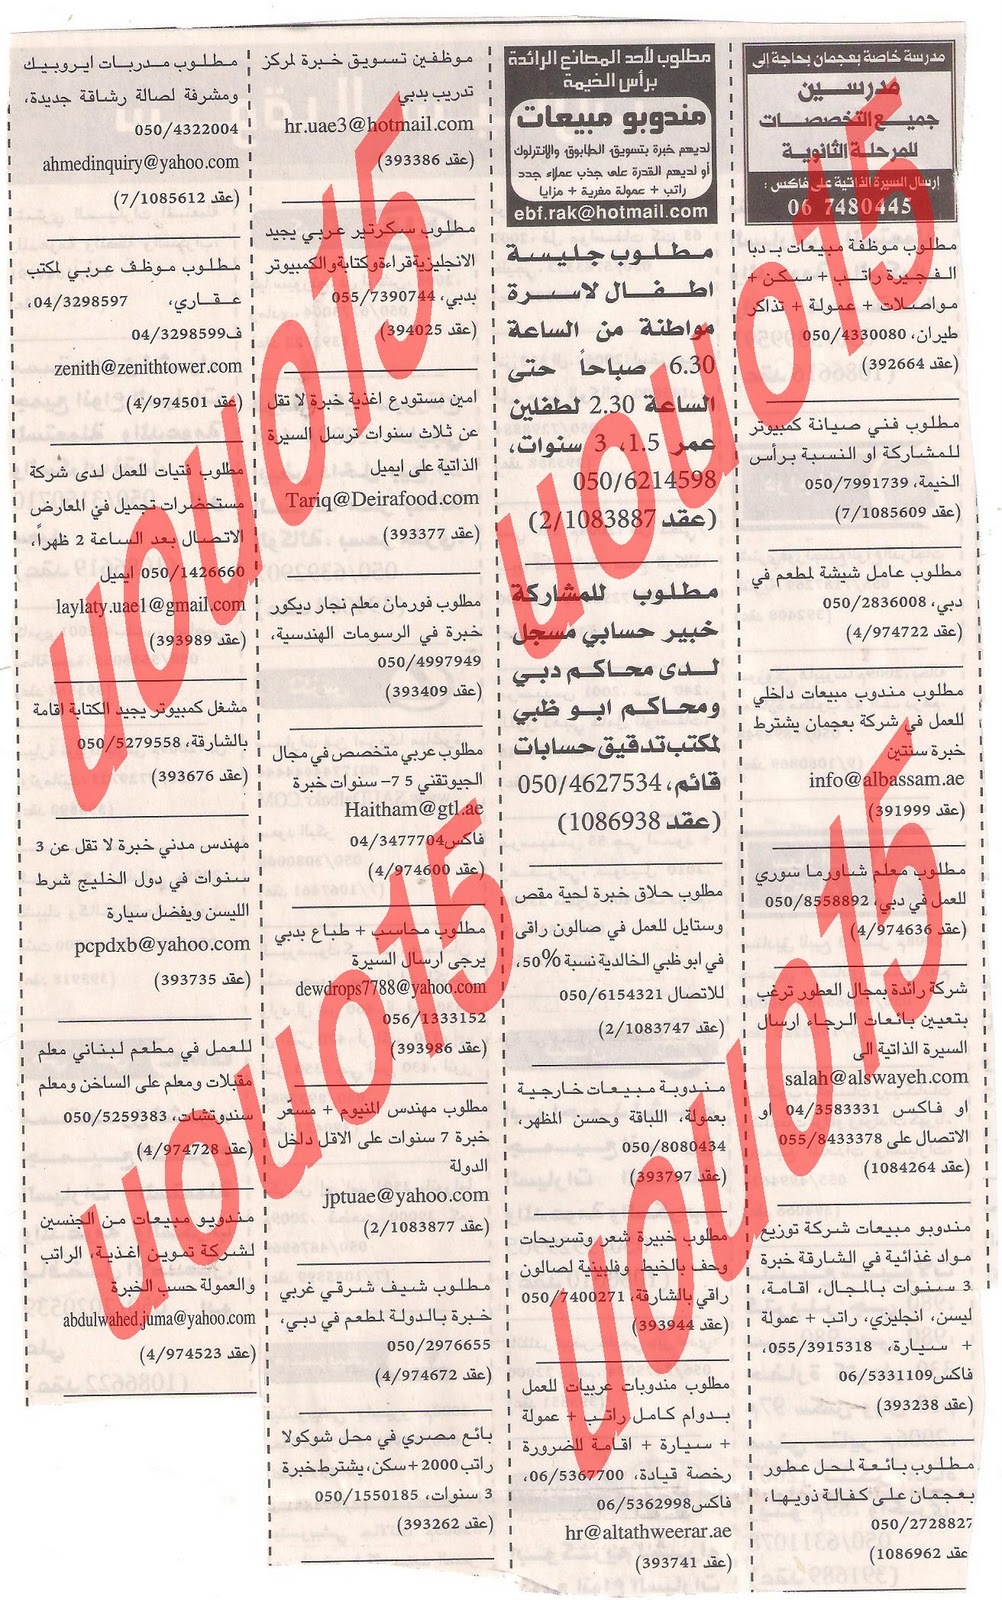 وظائف شاغرة من جريدة الخليج الخميس 29\12\2011  Picture+008